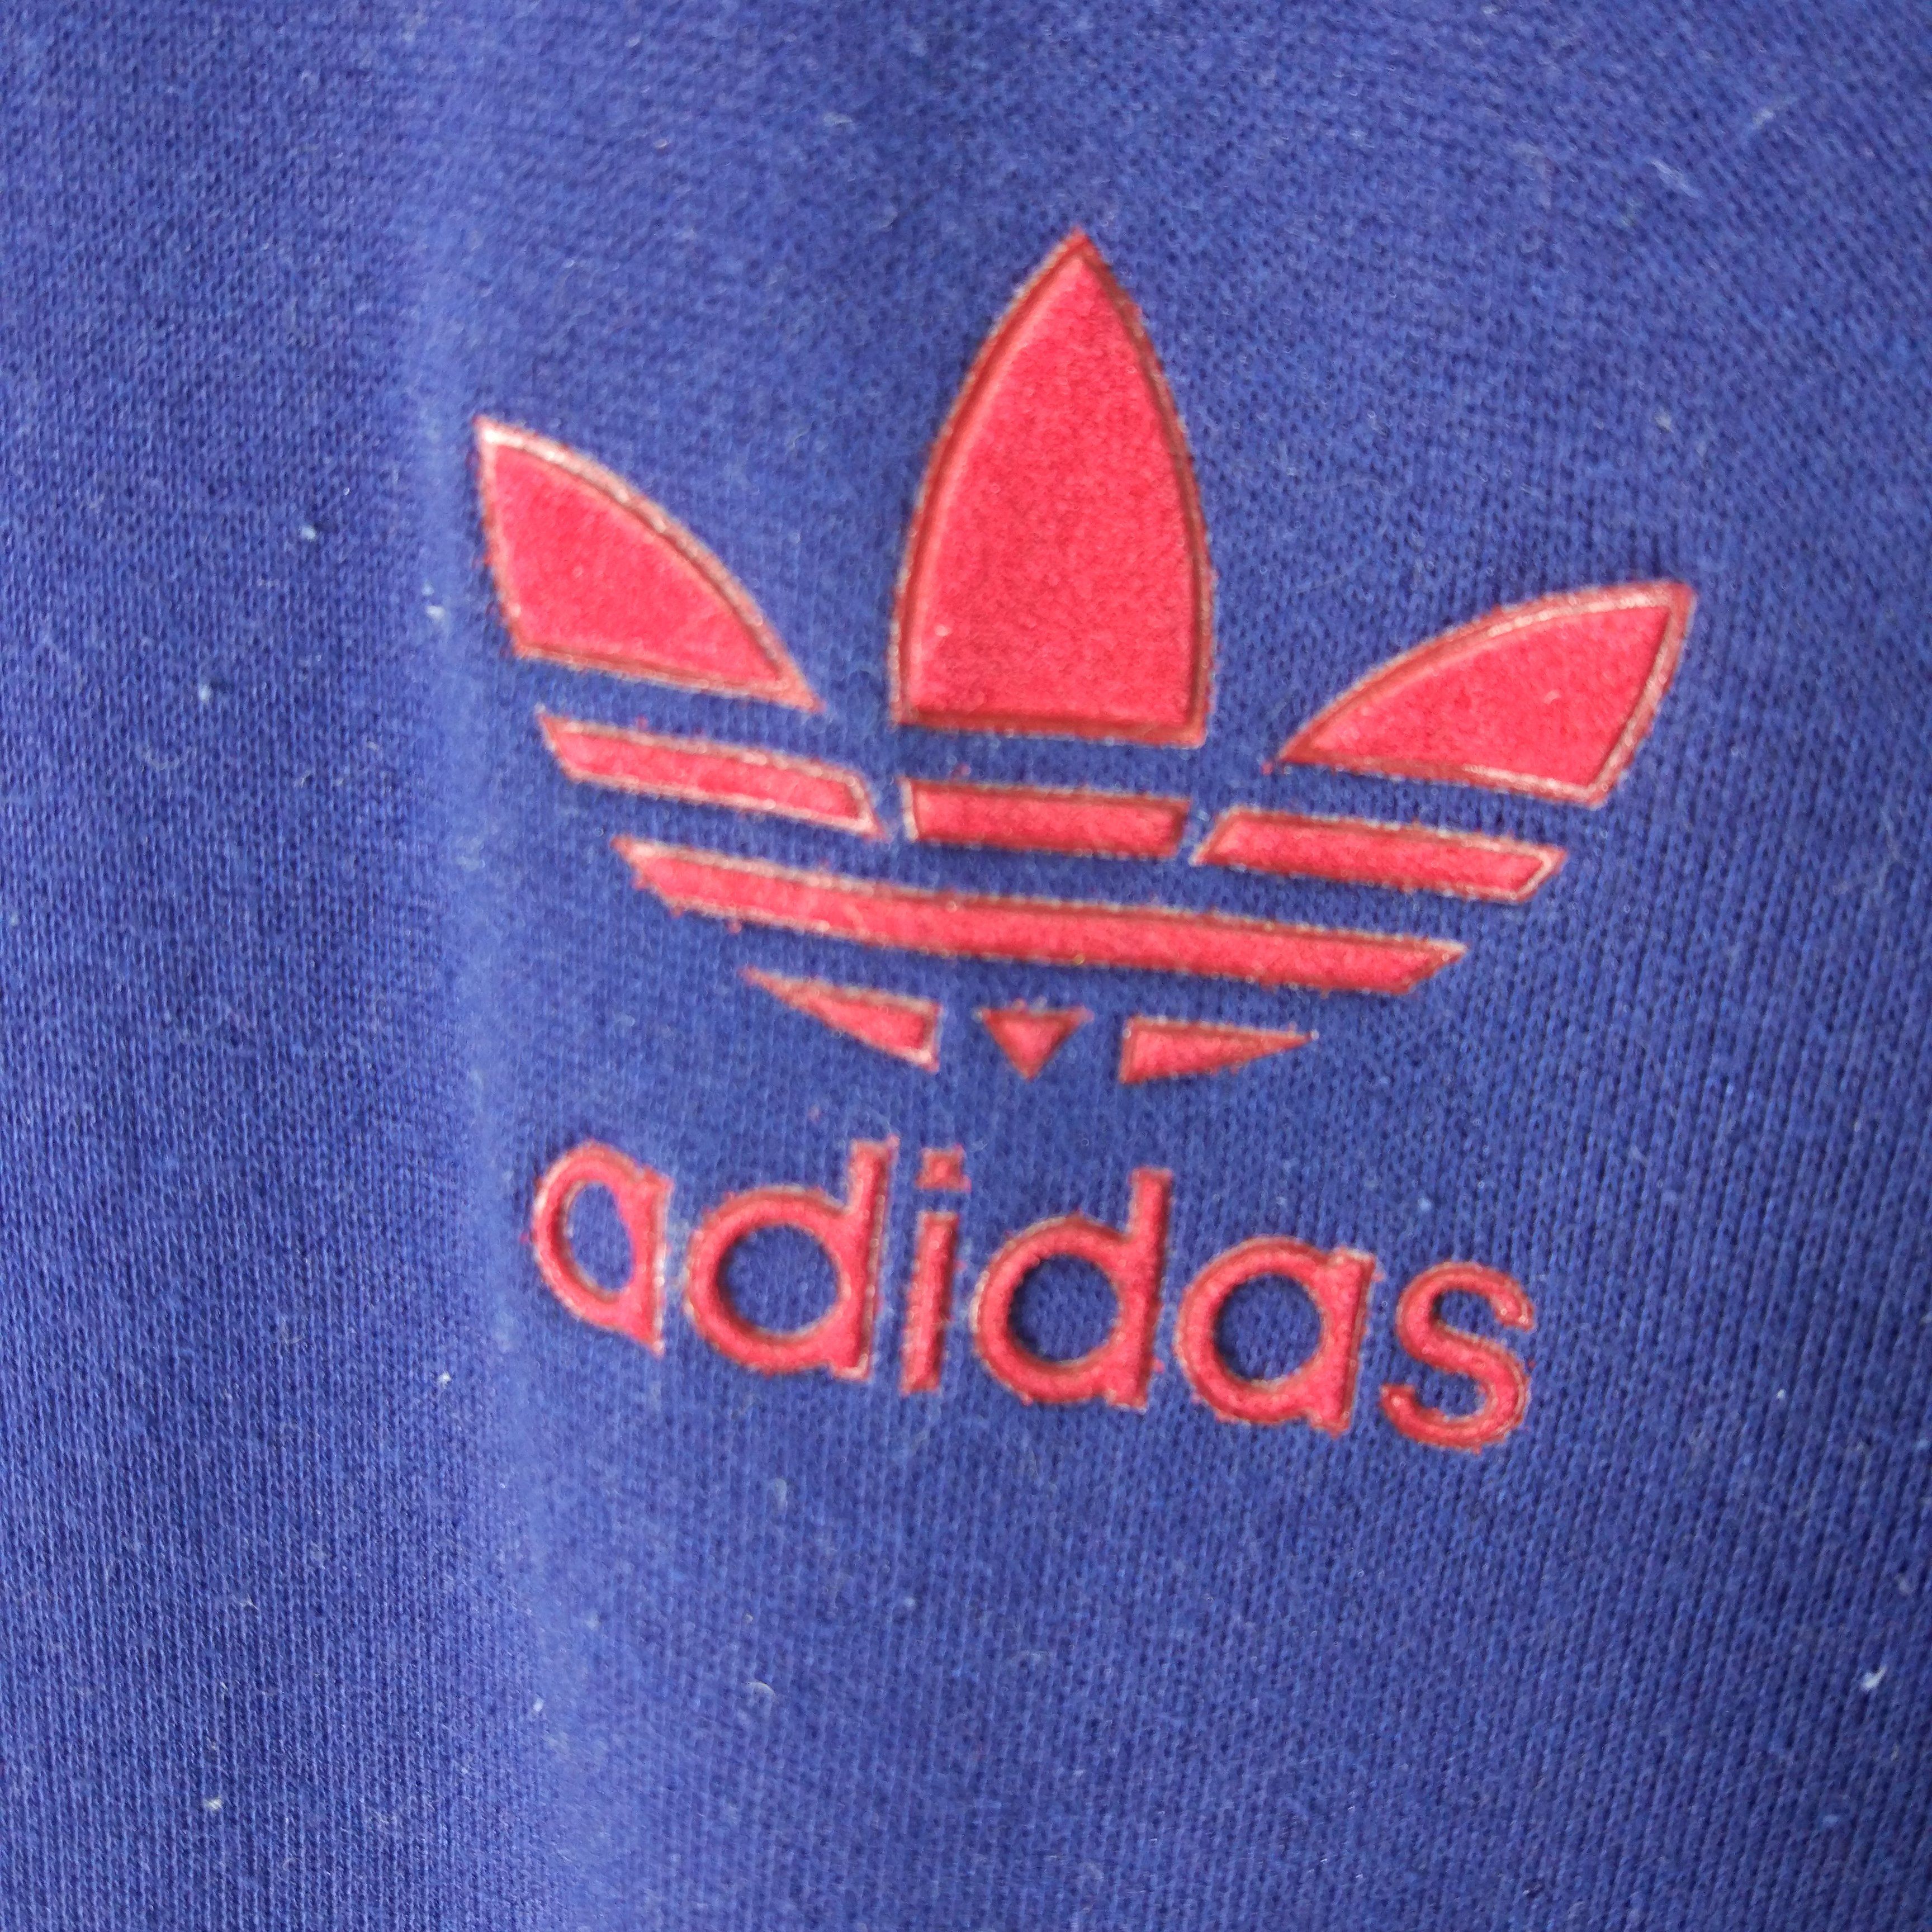 Vintage 90s Adidas Trefoil Halfzip Jumper Sweatshirt - 6